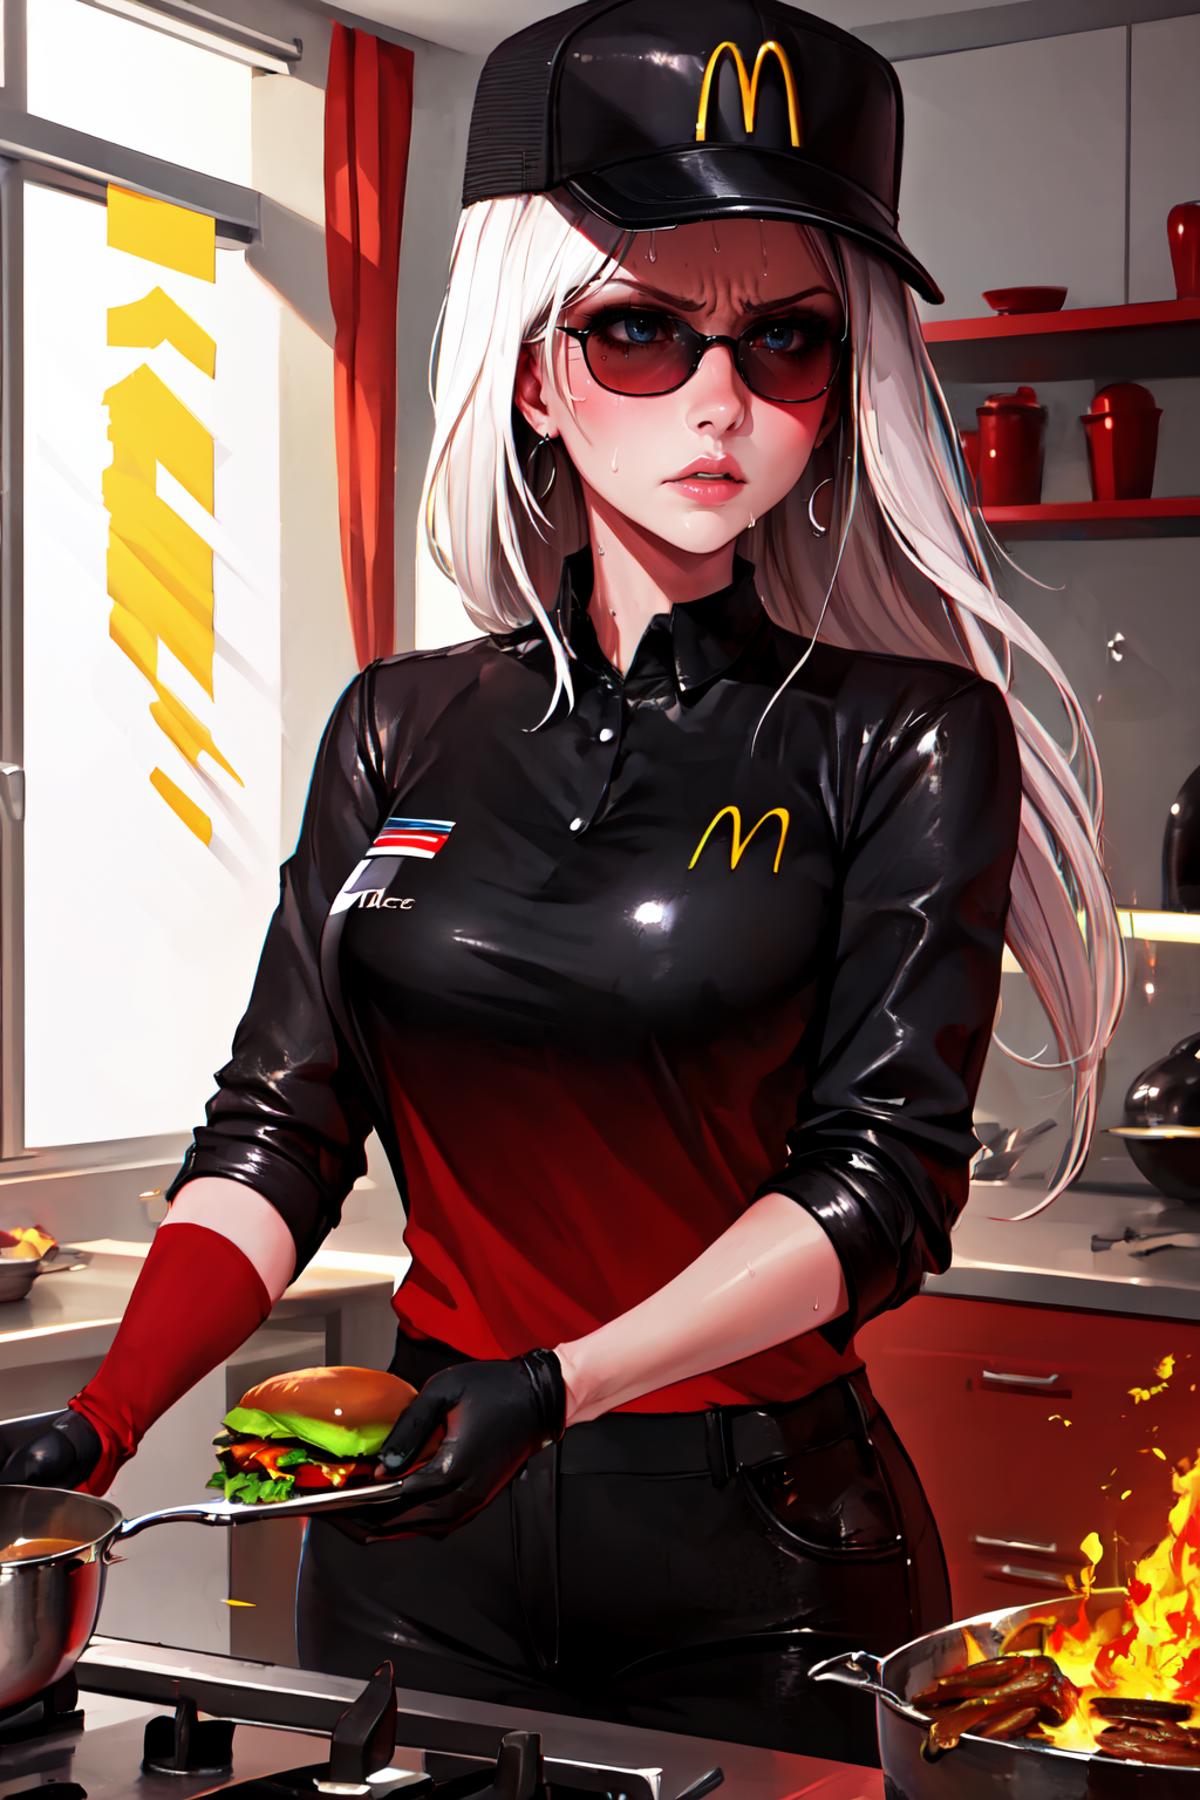 McDonalds Uniform (black) | Outfit LoRA image by FallenIncursio